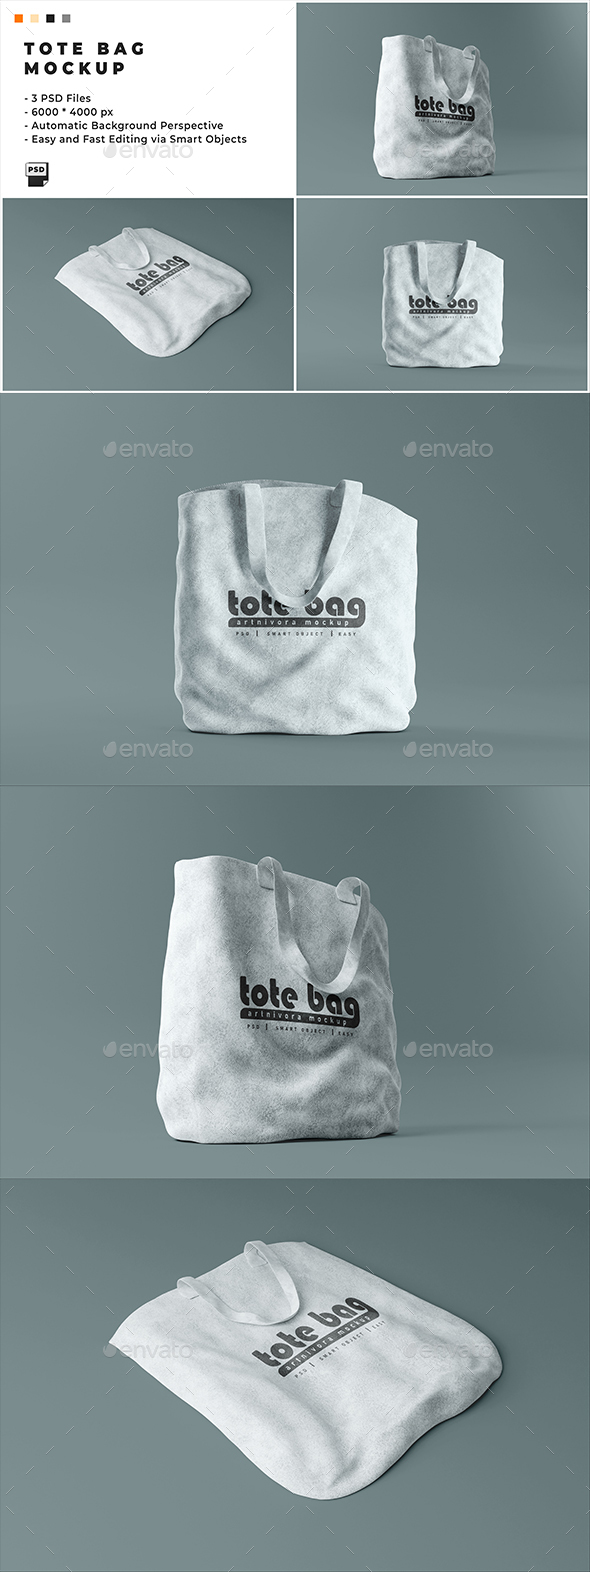 [DOWNLOAD]Tote Bag Mockup